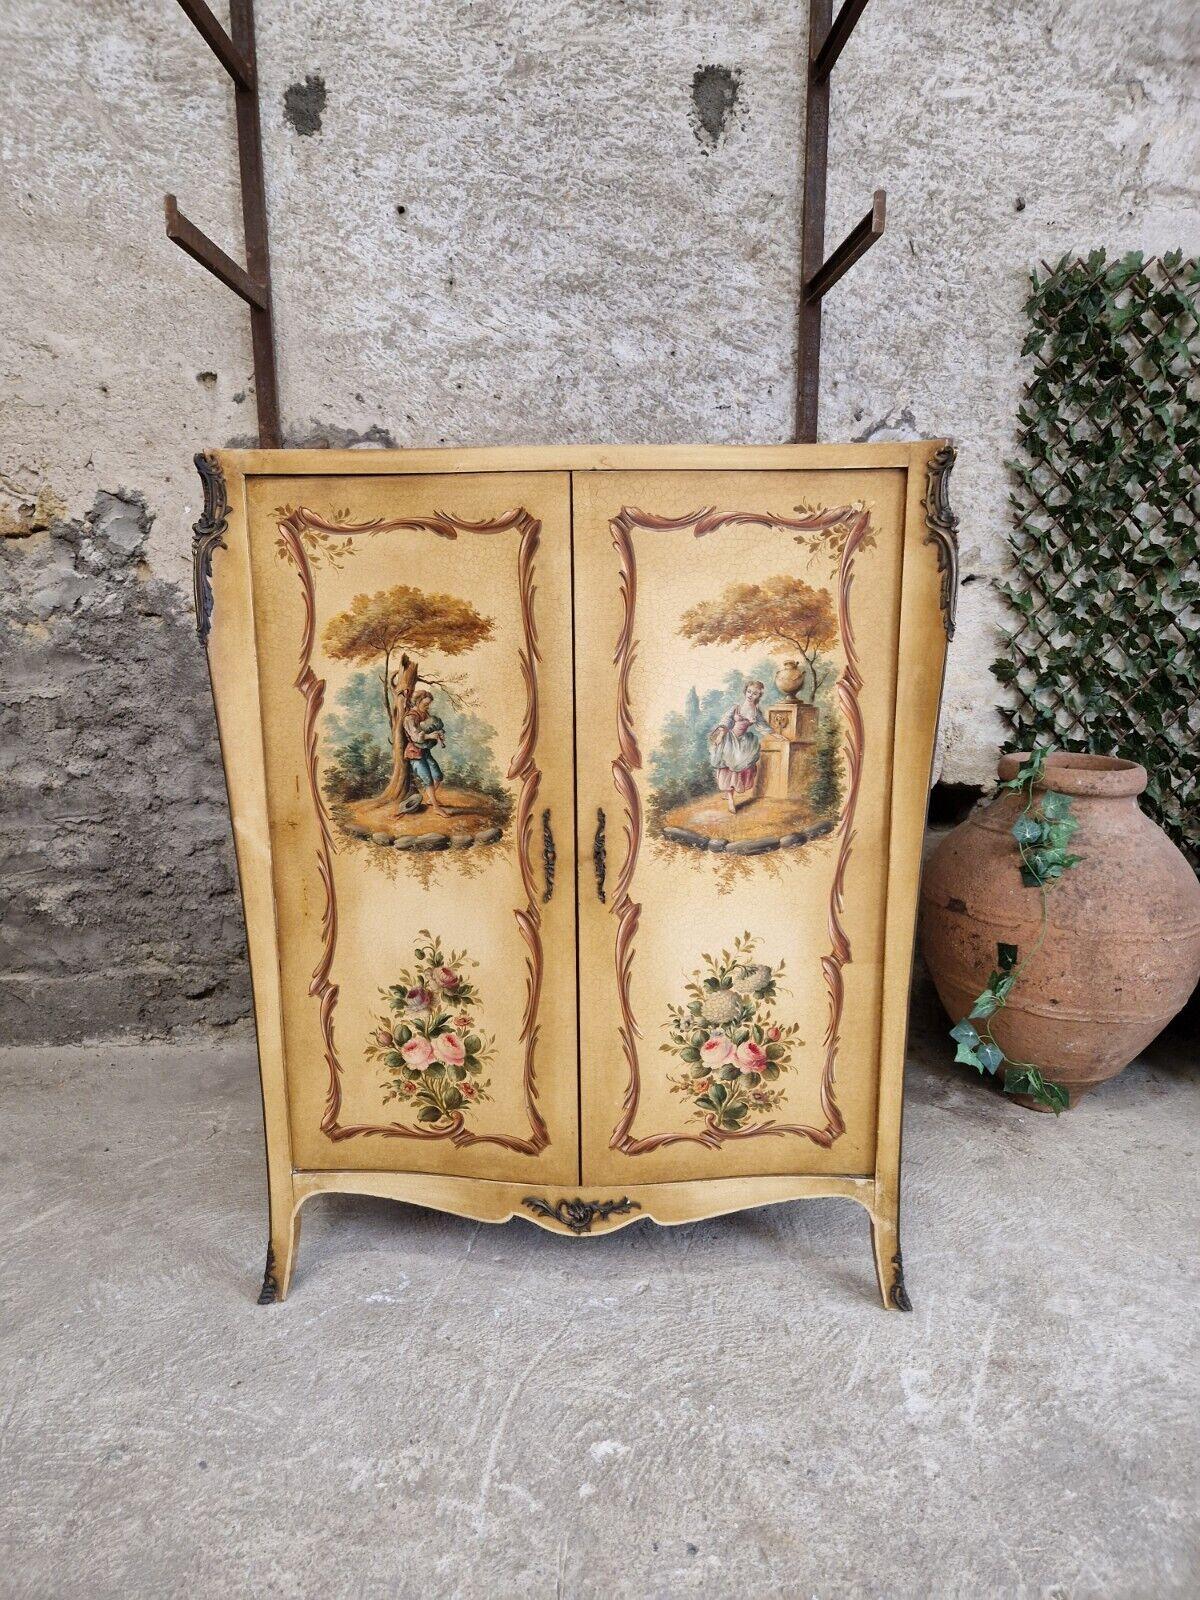 

Dieser atemberaubende antike französische Schrank im Stil von Ludwig XV. ist ein wahres Meisterwerk. Der handbemalte, polychromierte Schrank ist aus hochwertigem Holz mit creme-beiger Craquelé-Lackierung gefertigt und verfügt über zwei Türen mit